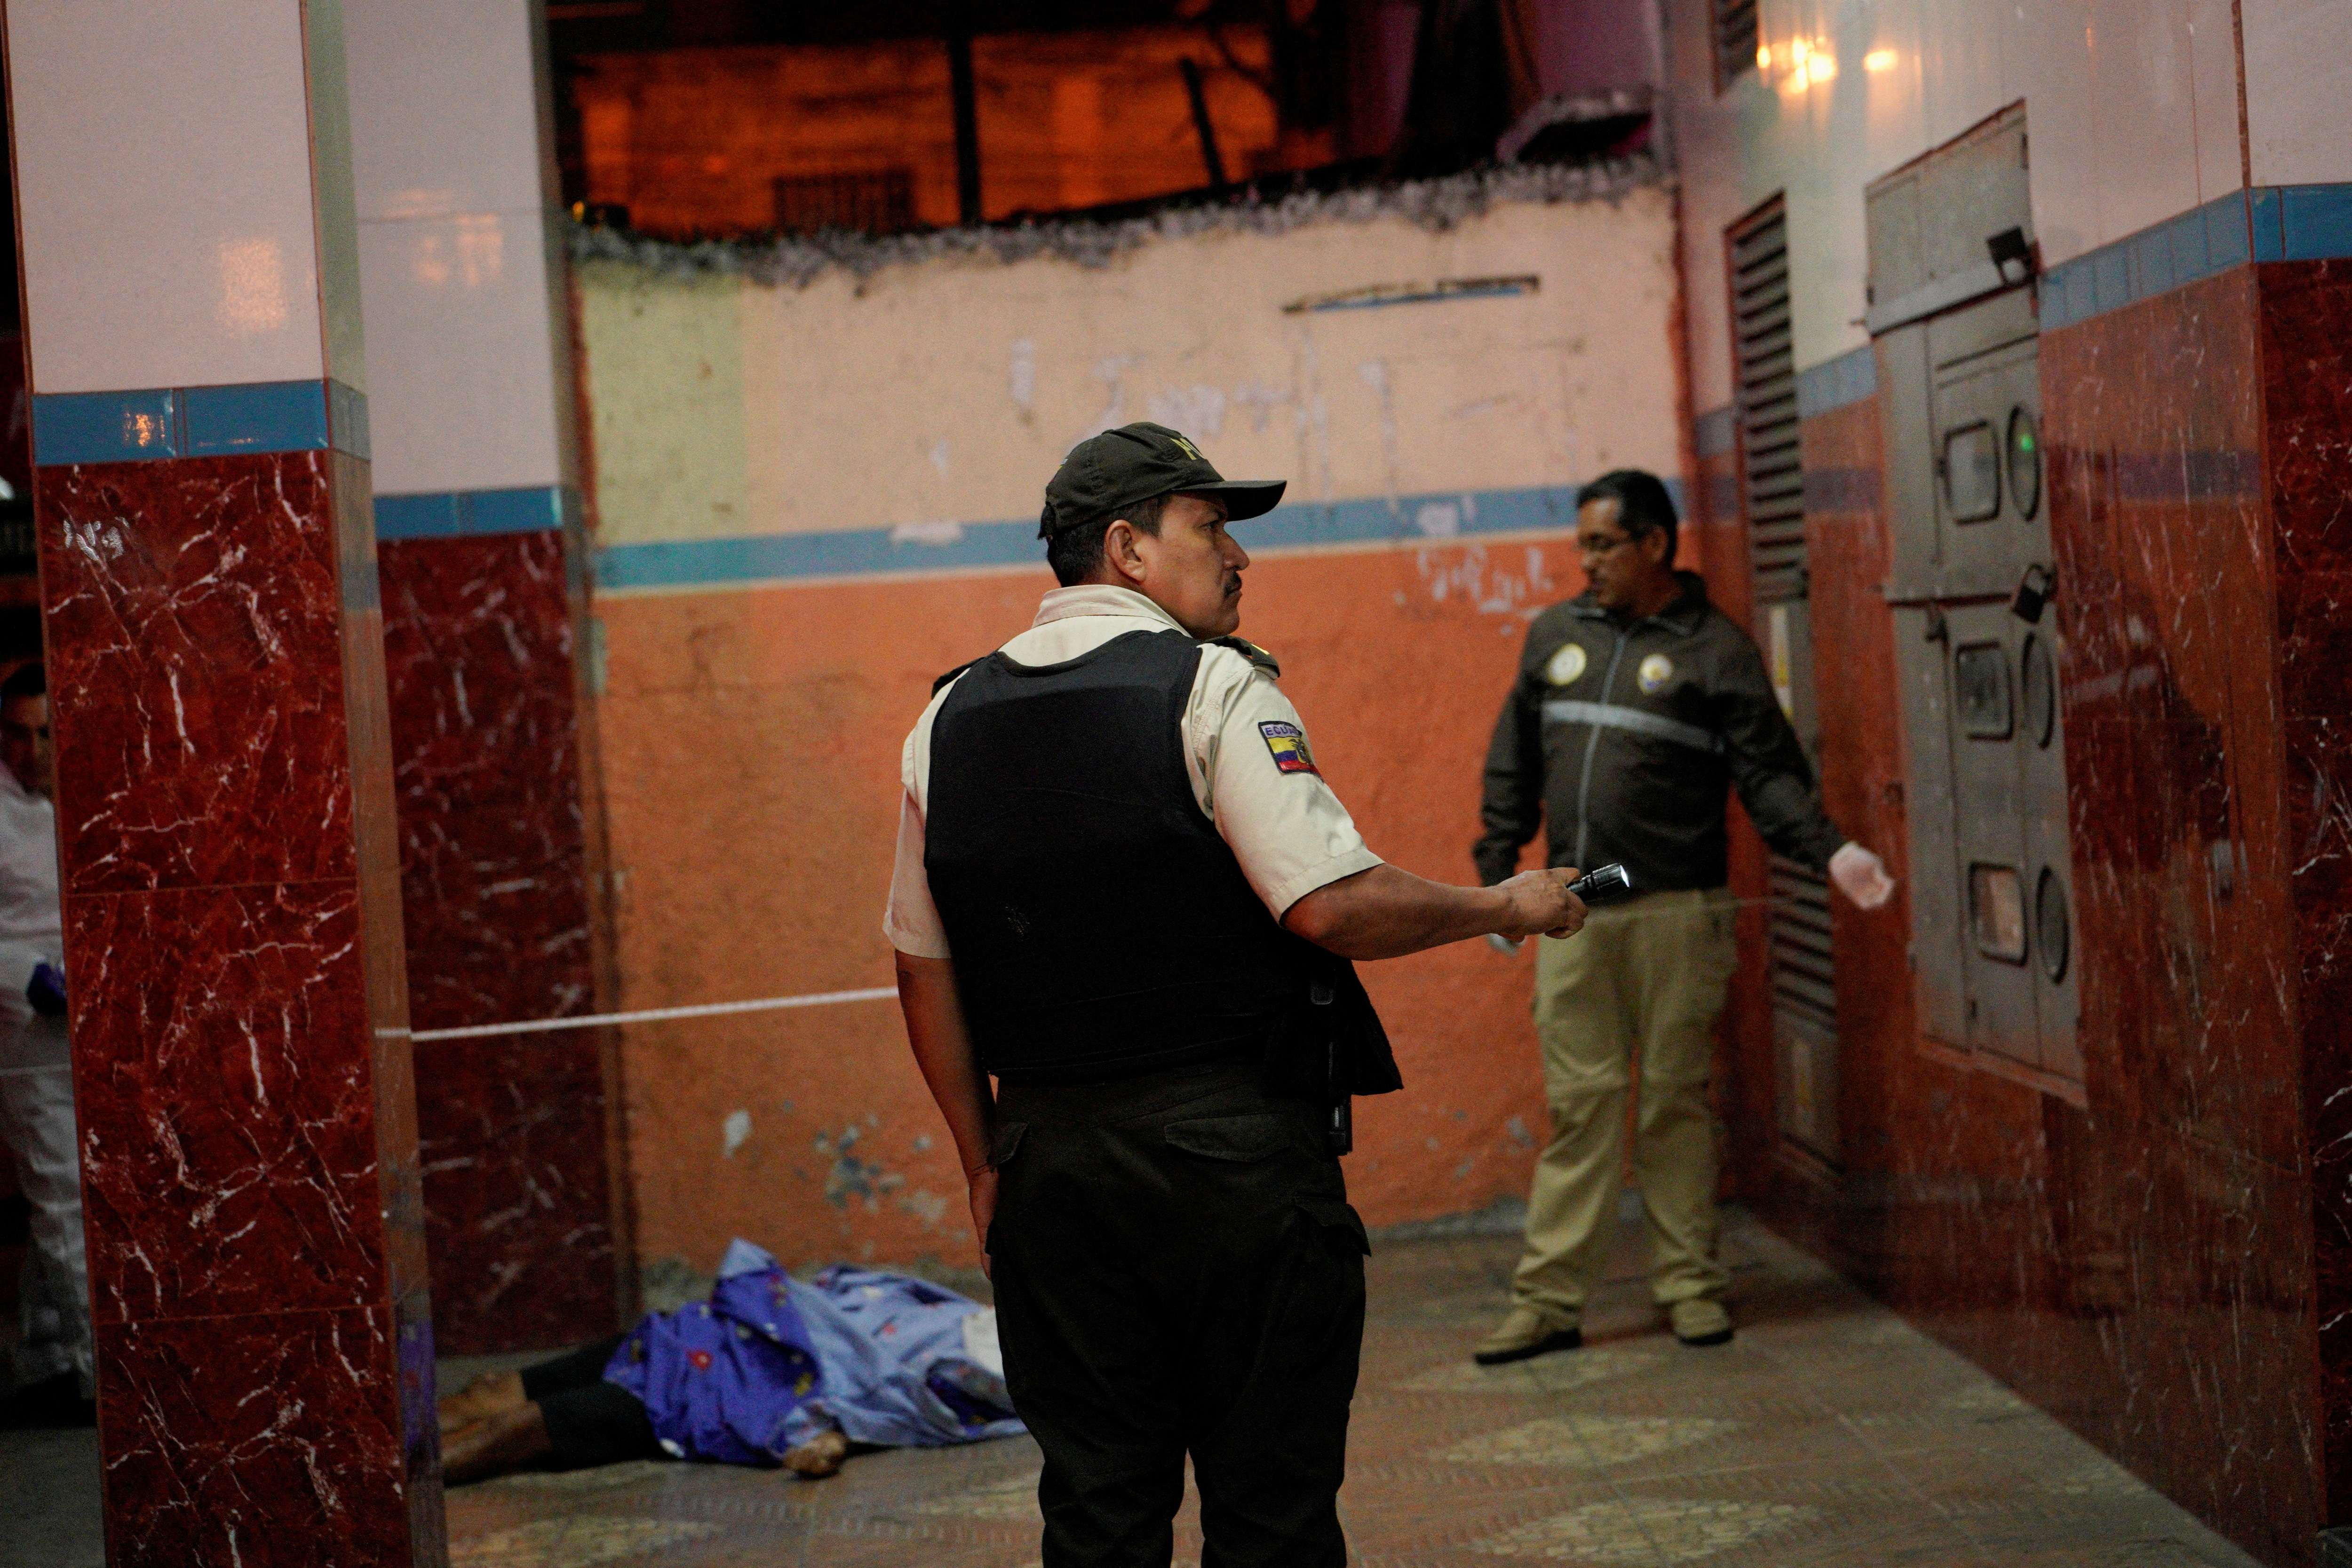 Las muertes violentas continúan en Guayaquil. Las autoridades señalan que la penetración del narcotráfico en el Ecuador es la causa. (REUTERS/Santiago Arcos/ Archivo)